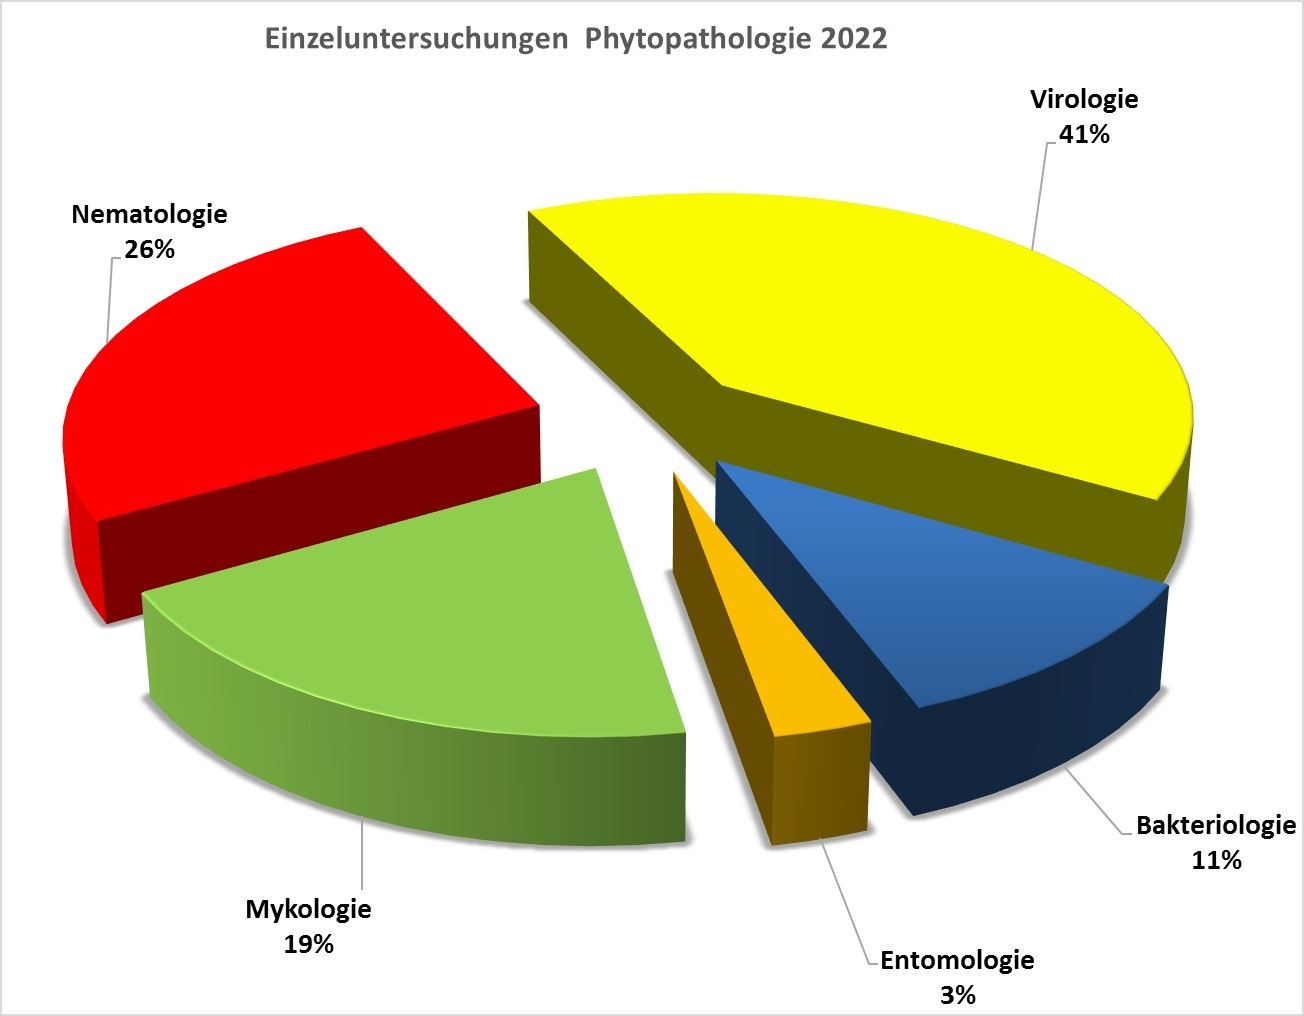 Abbildung 1 zu Einzeluntersuchungen in der Phytopathologie 2022 in Prozent